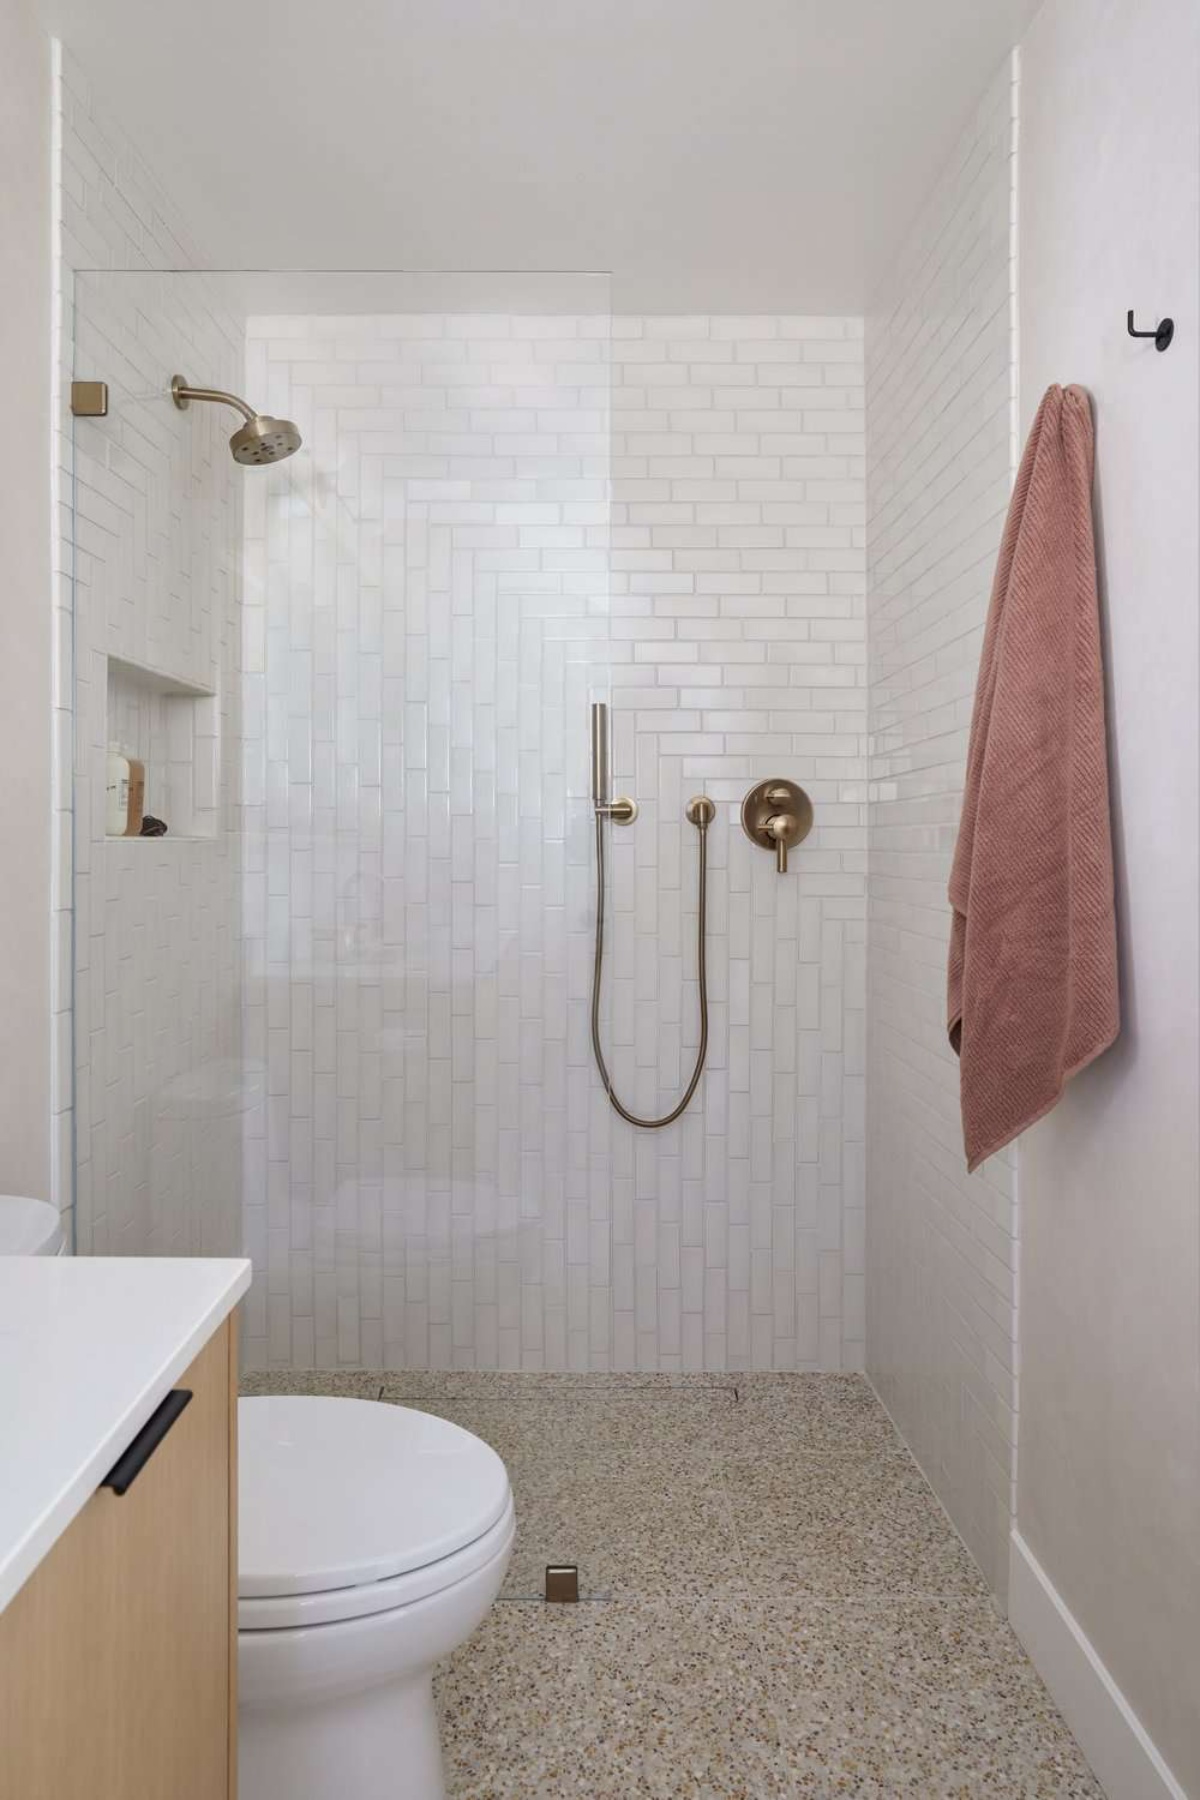 sala da bagno dimensioni ridotte box doccia con vetro